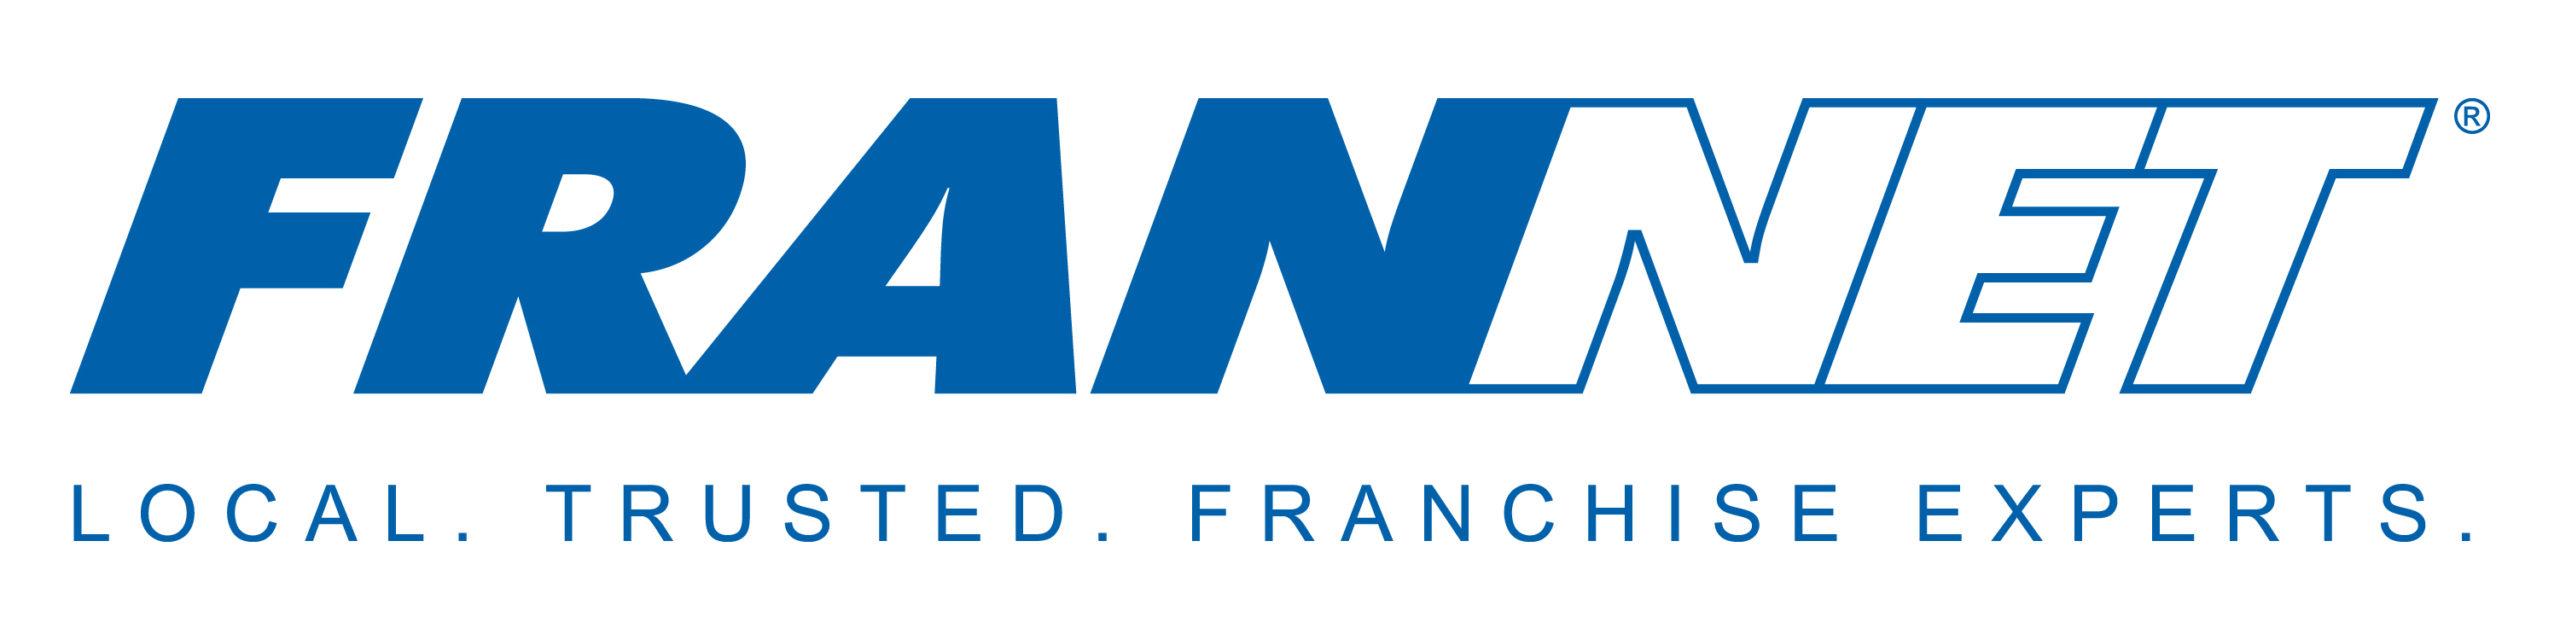 Blue and White FranNet Logo